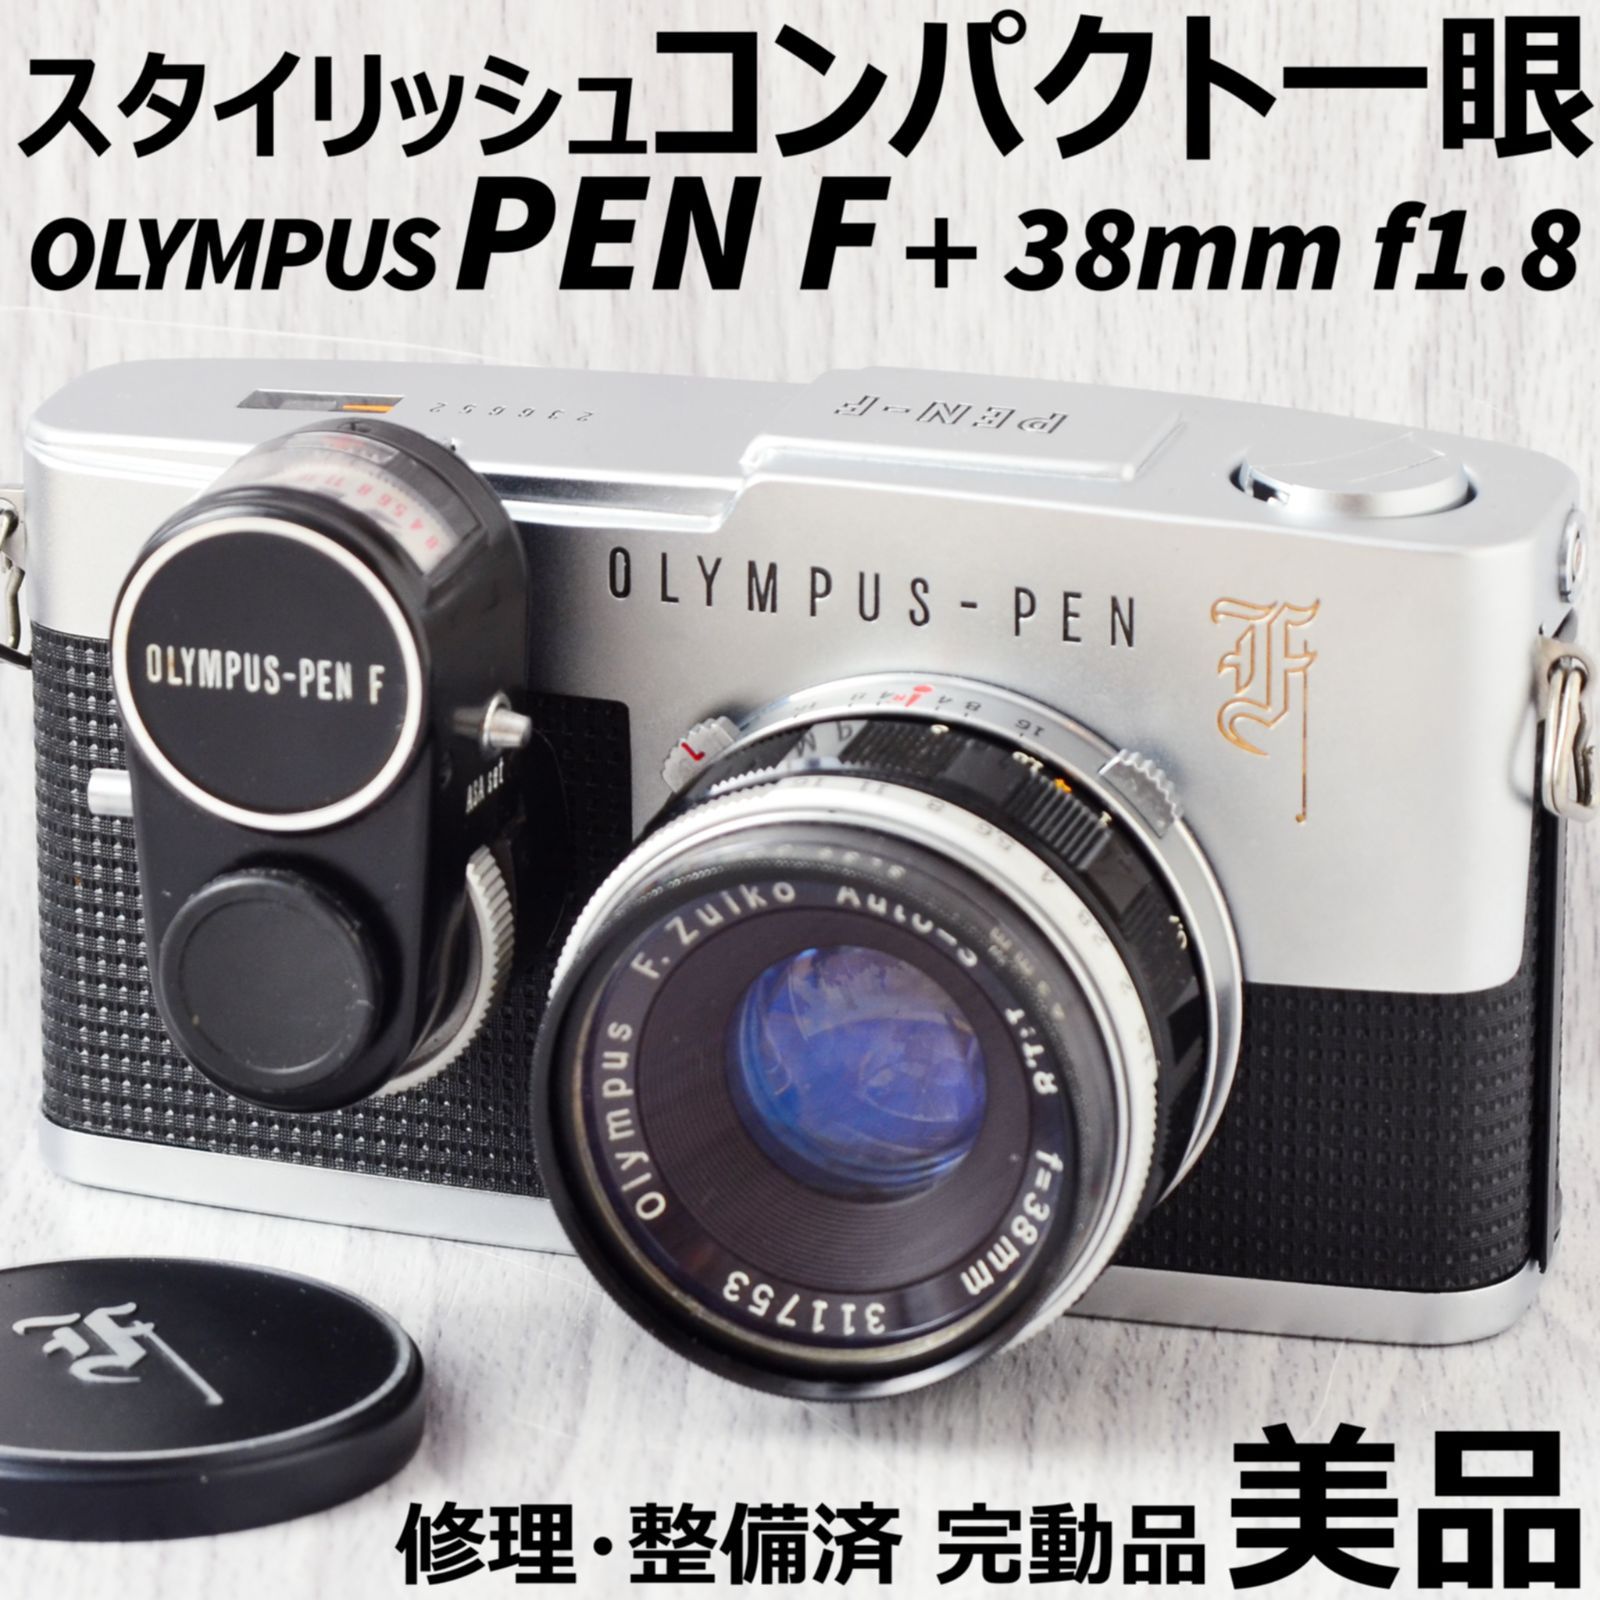 美品 OLYMPUS PEN F + 38mm f1.8 露出計付 修理・整備済 完動品 ...